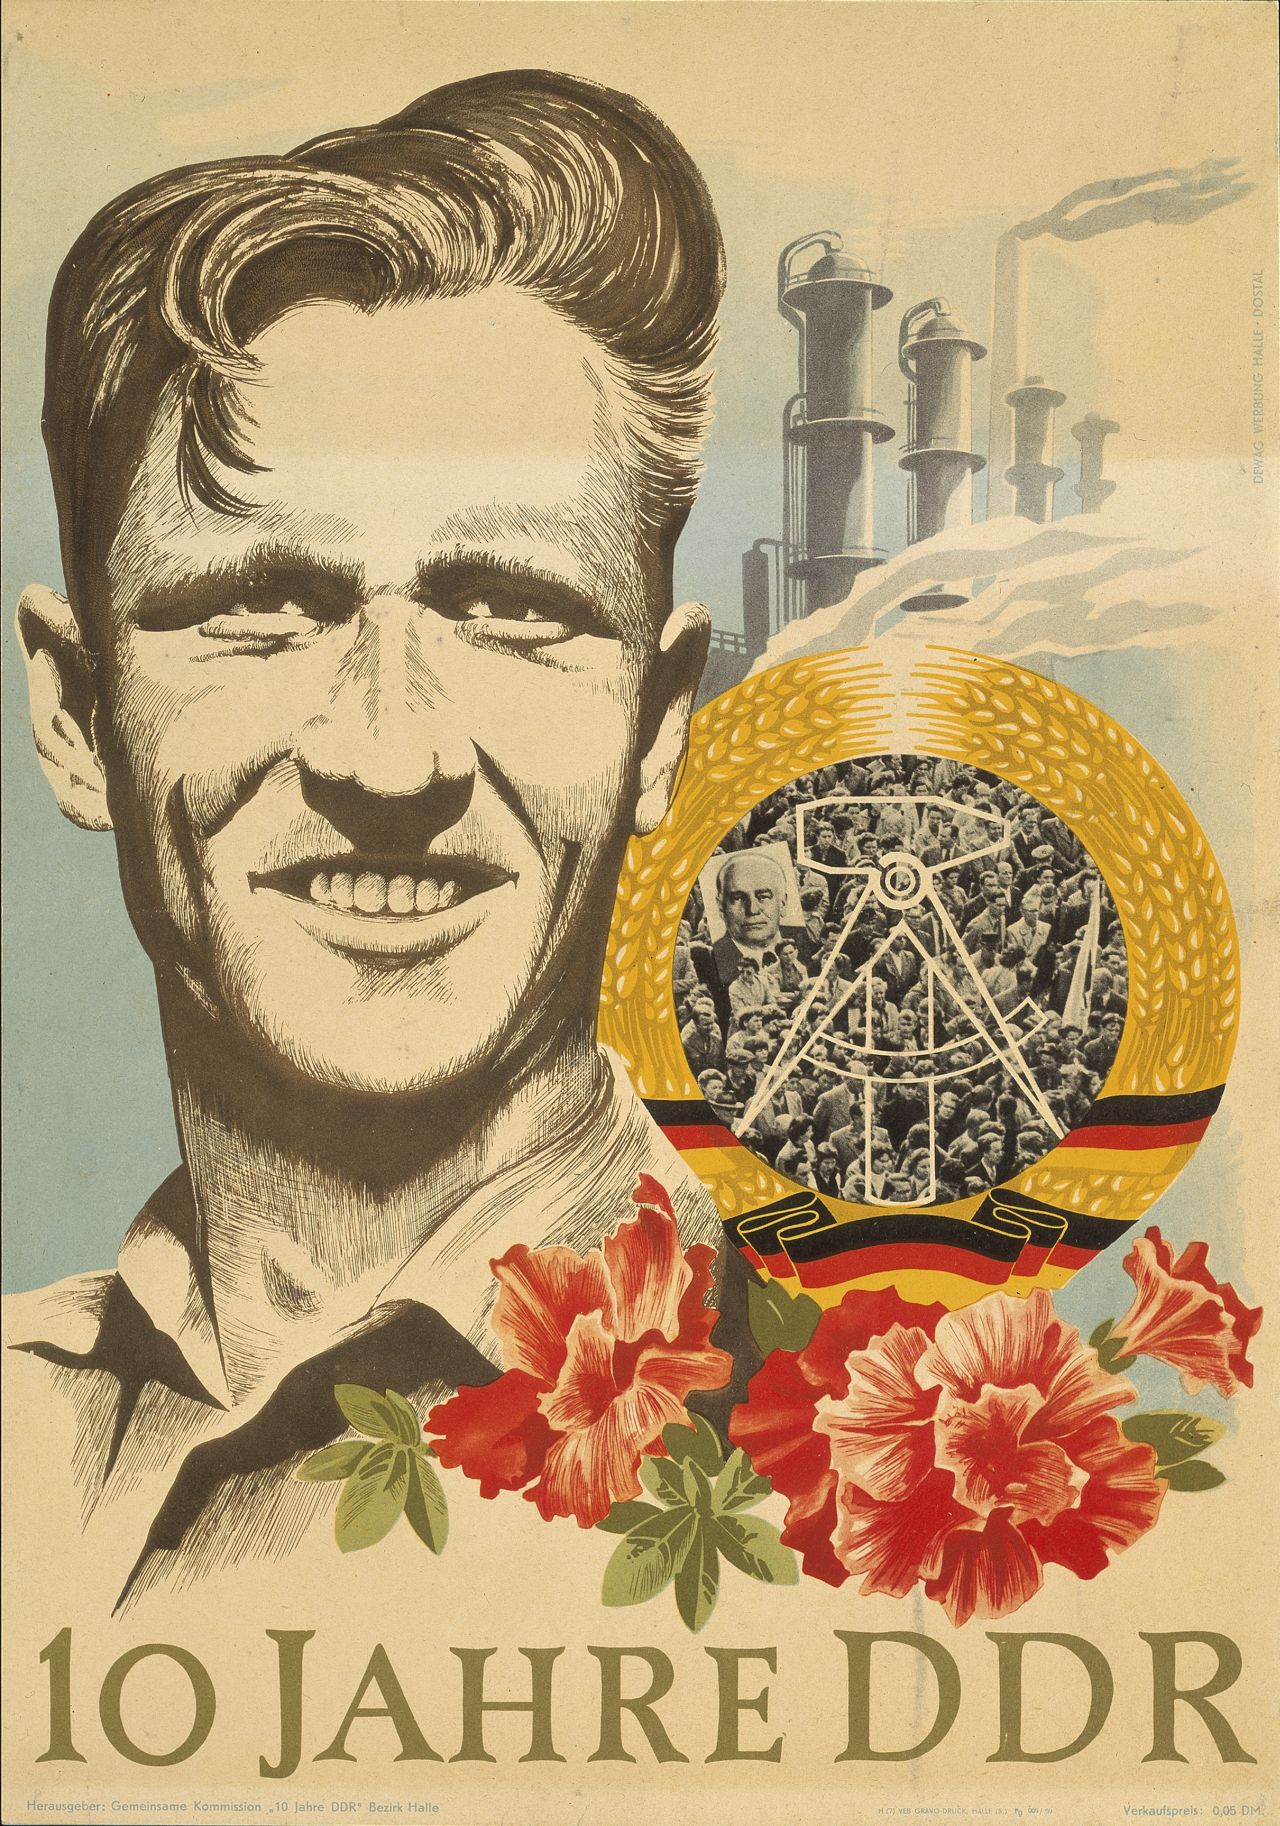 Farbige Zeichnung: Männerporträt, im Hintergrund Fabrikanlage, davor DDR-Emblem und Blumen. Unten Schriftzug: 10 Jahre DDR